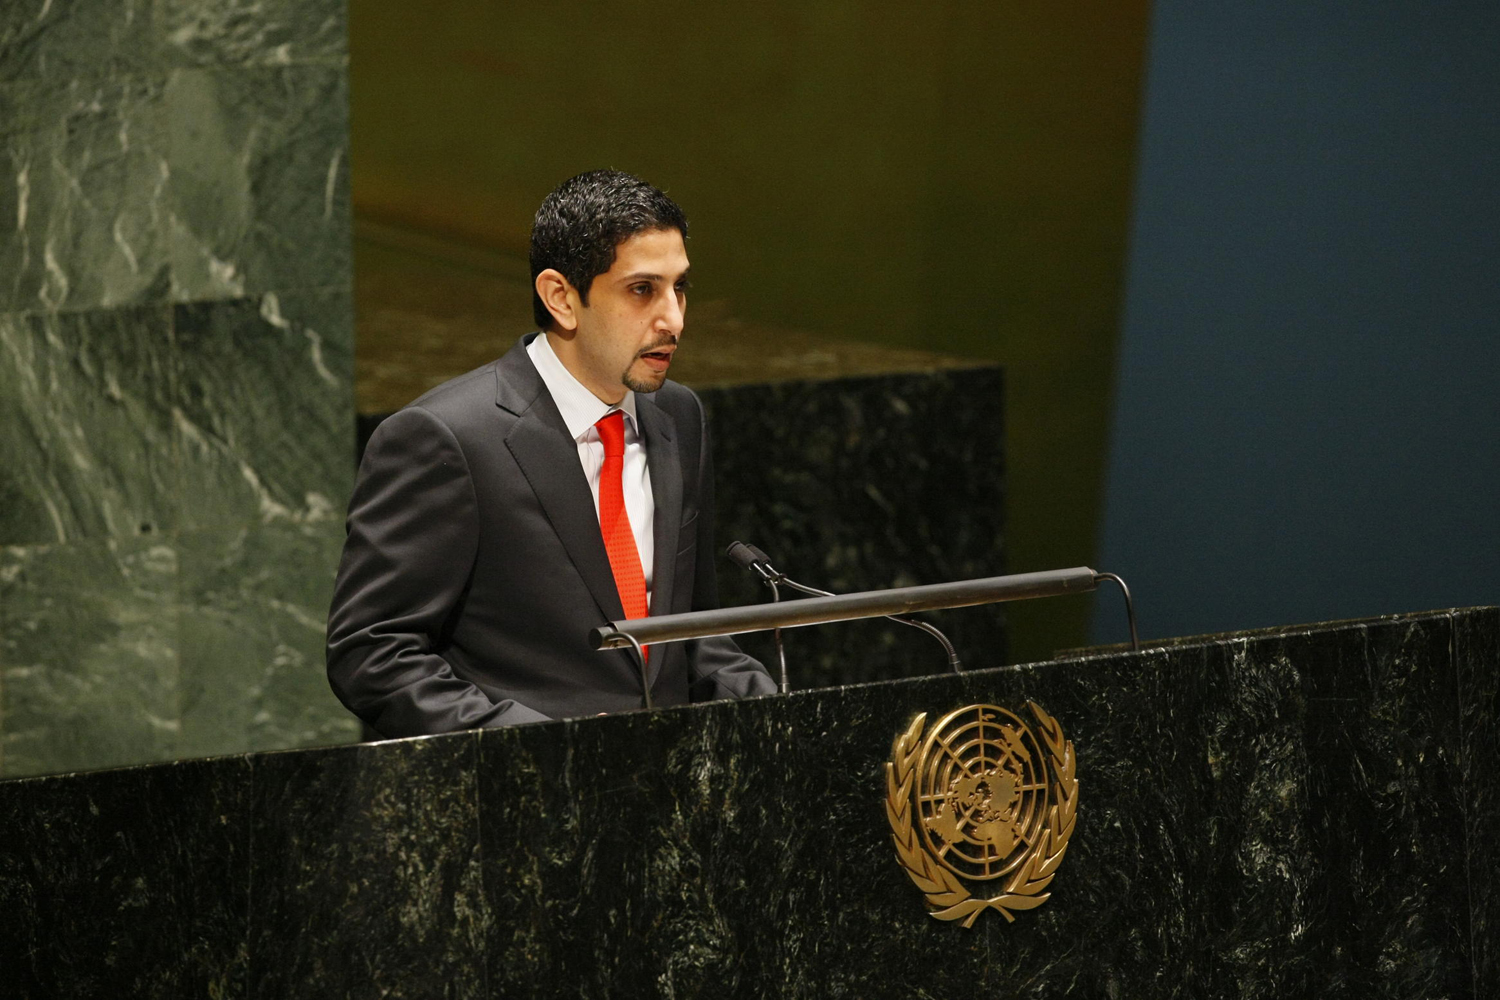 السكرتير أول سعد عبدالعزيز المهيني يلقي كلمة وفد دولة الكويت الدائم لدى الأمم المتحدة